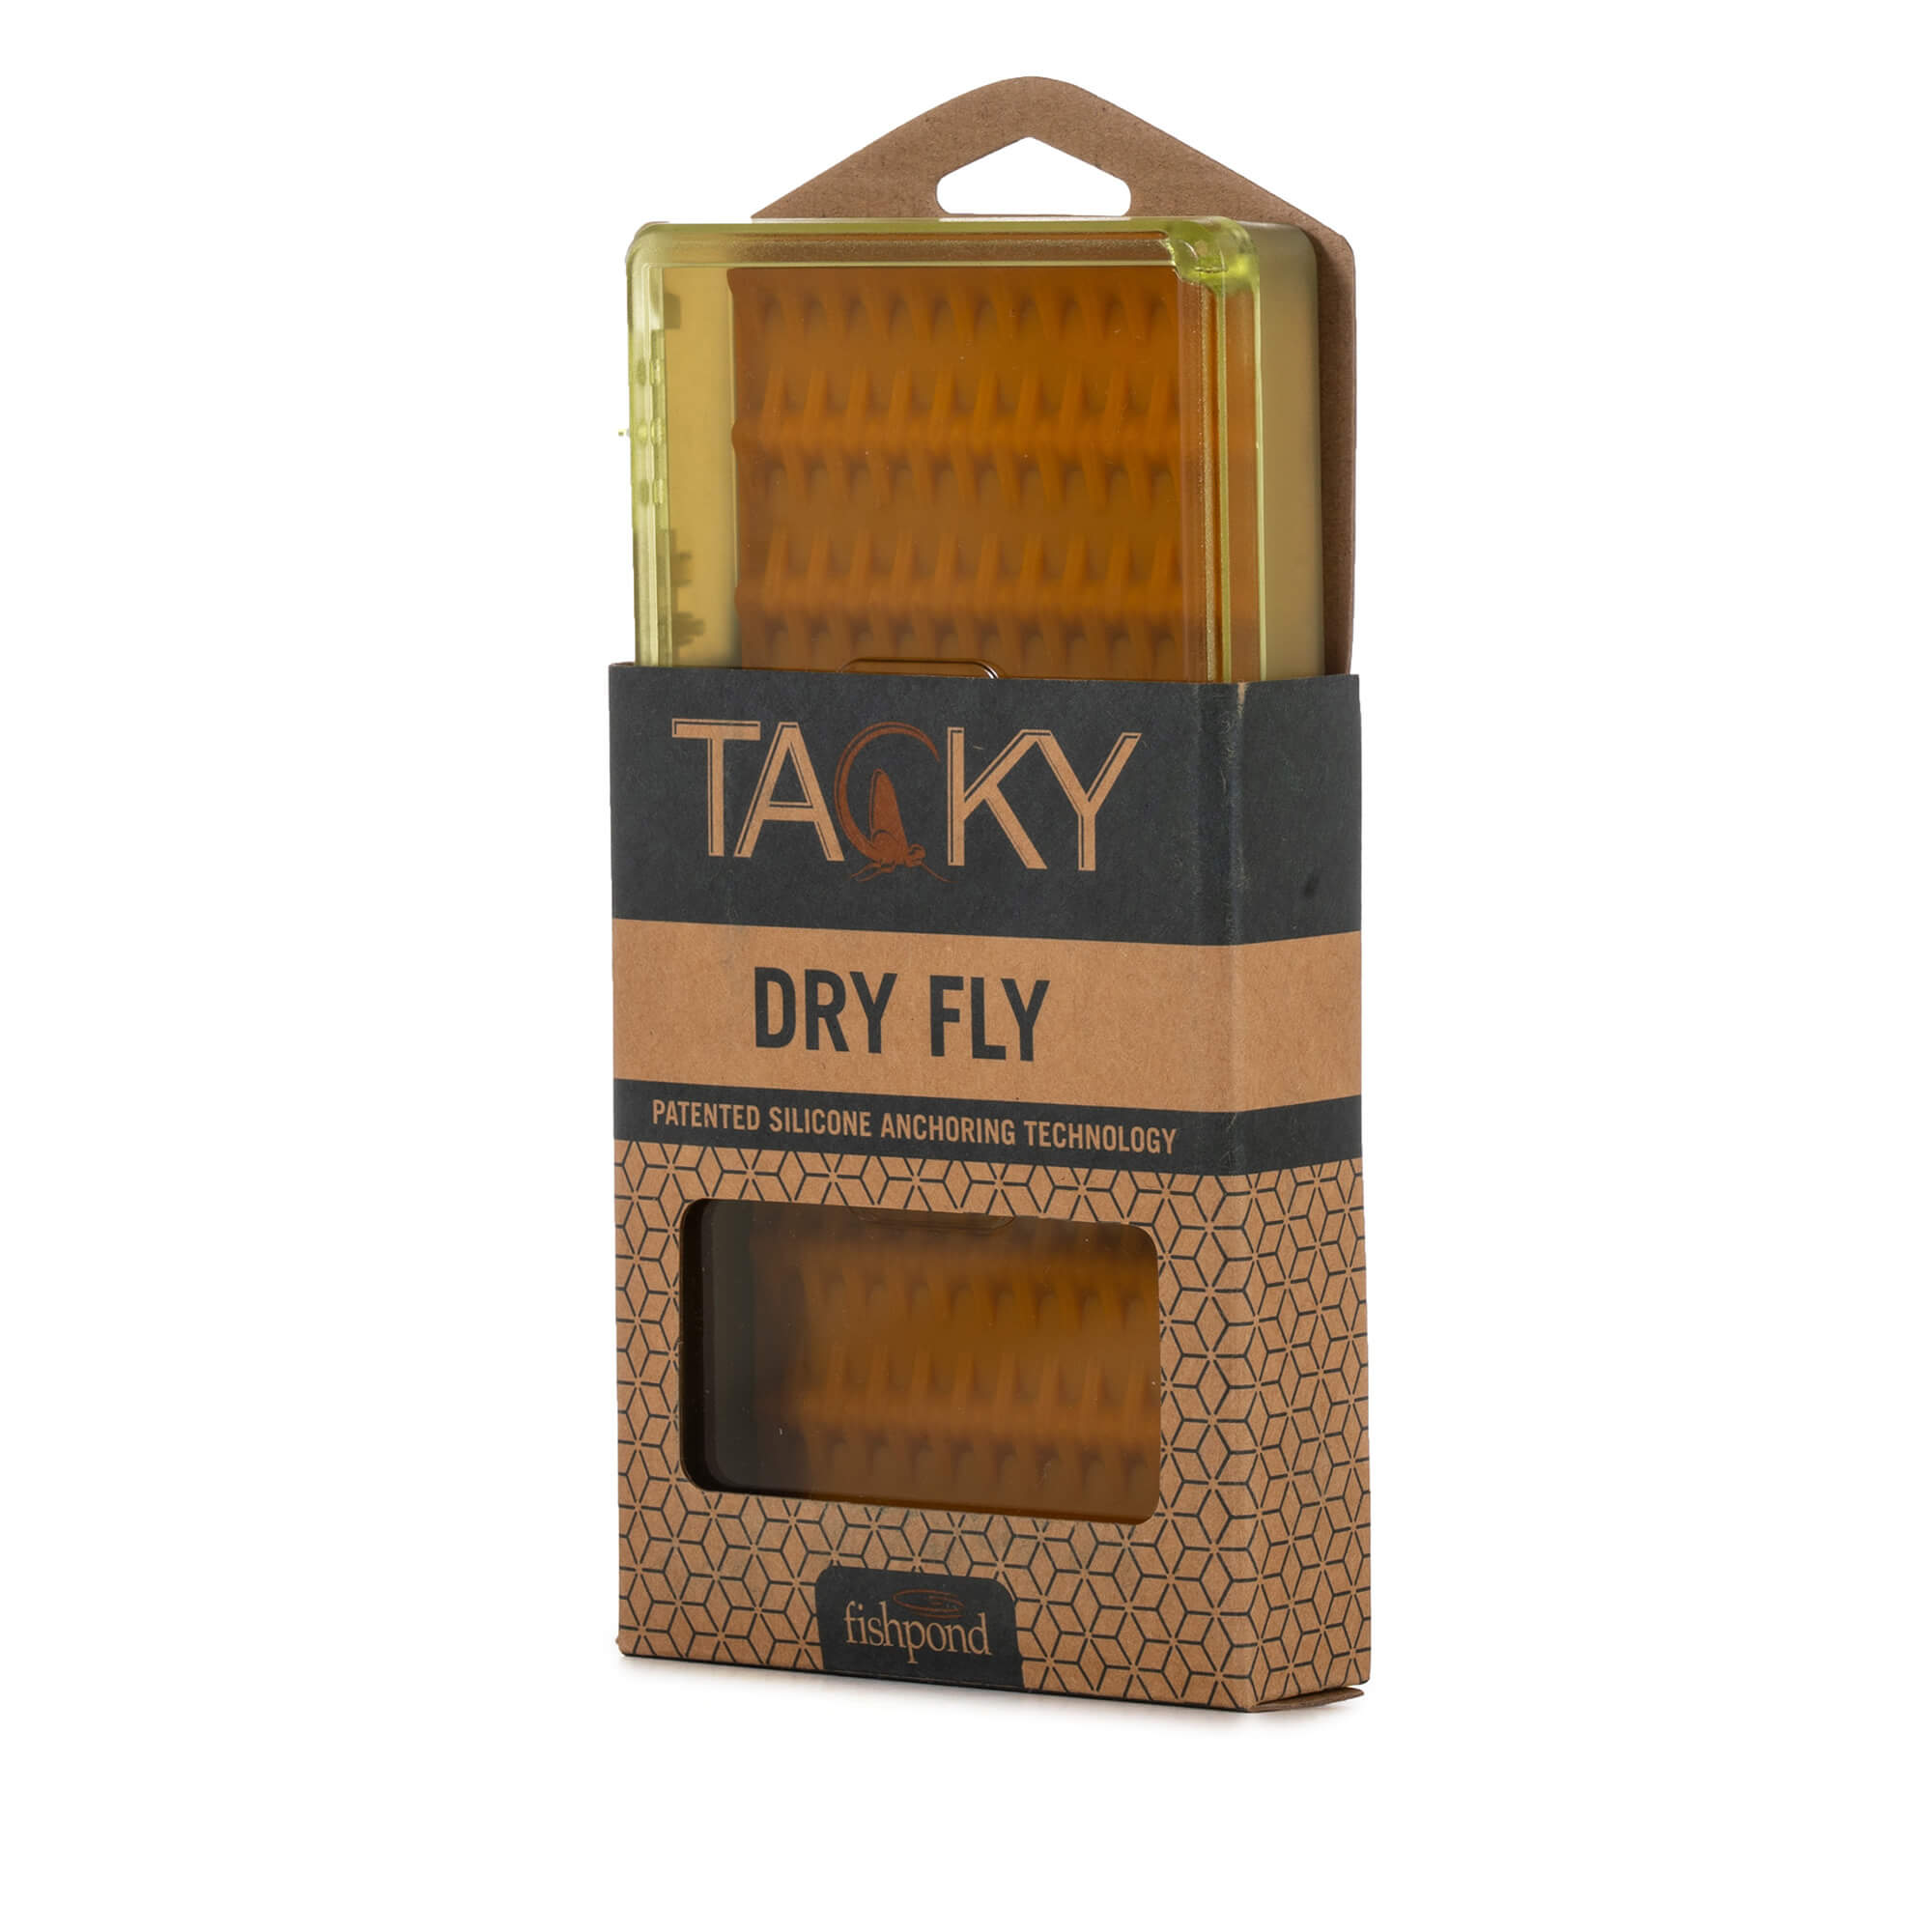 Tacky Dry Fly Box SeriousFishing.com